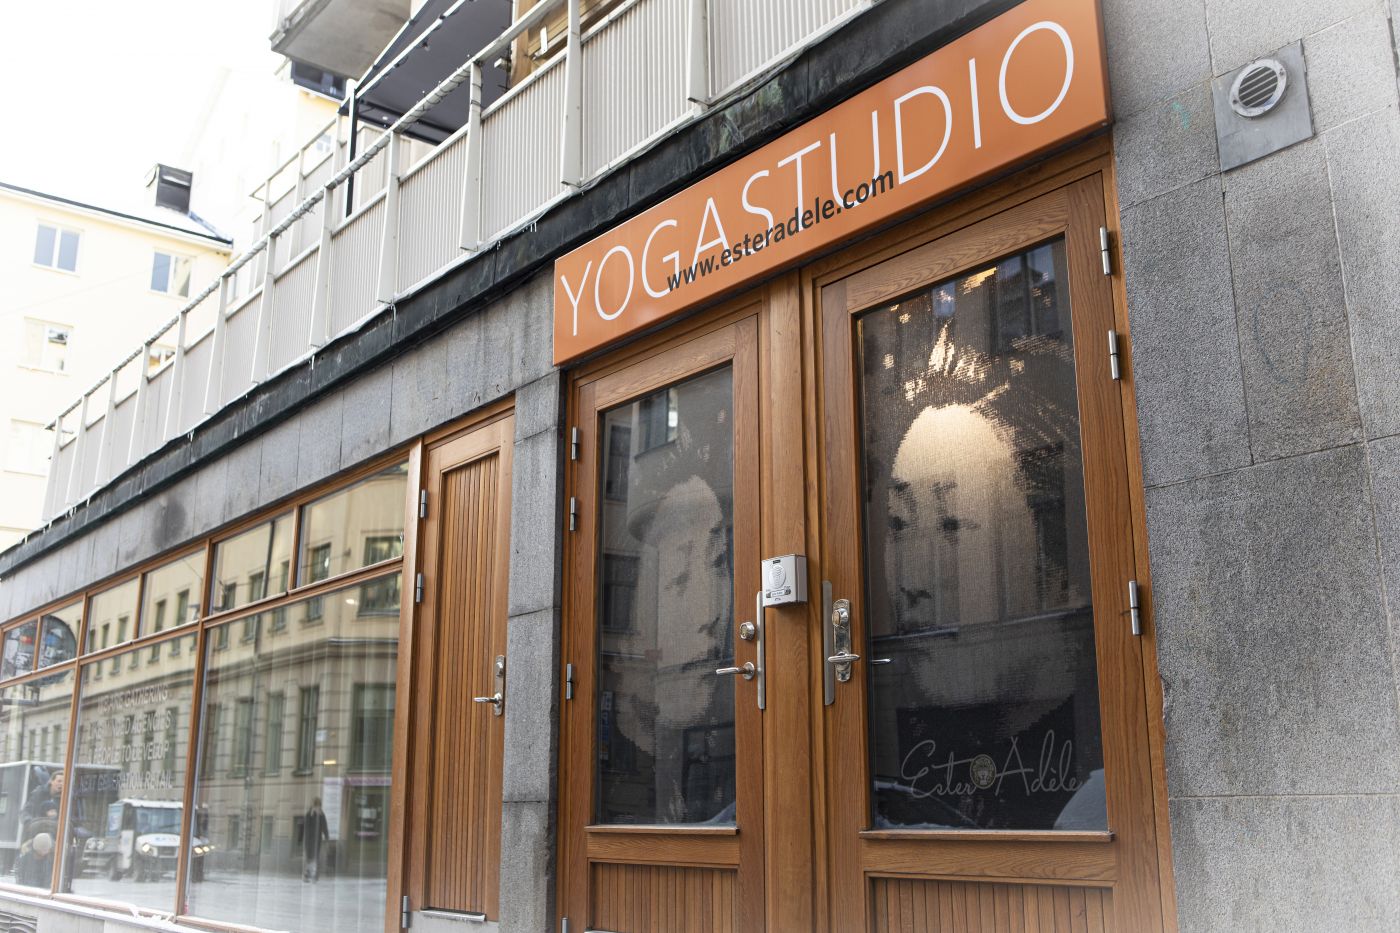 St Paulsgatan 22, titta efter orangea skylten med Yogastudio